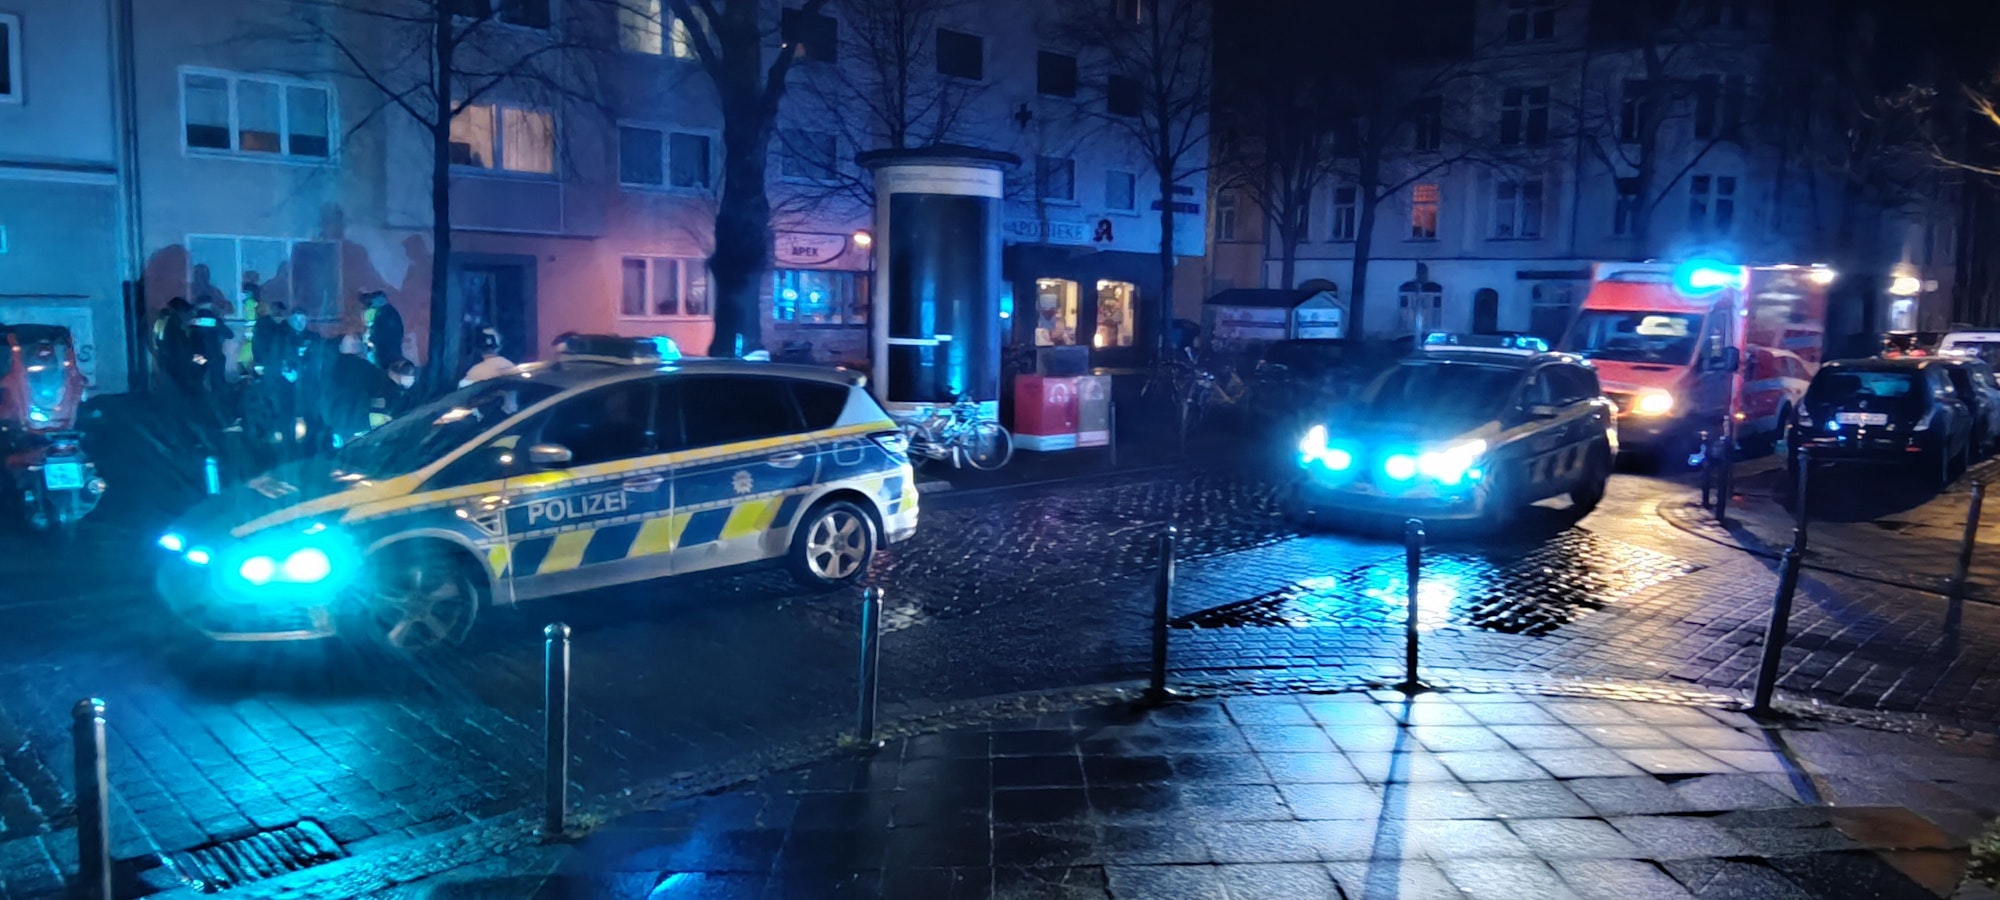 Polizei stehen auf der Straße bei einer Karnevals-Party in Köln.